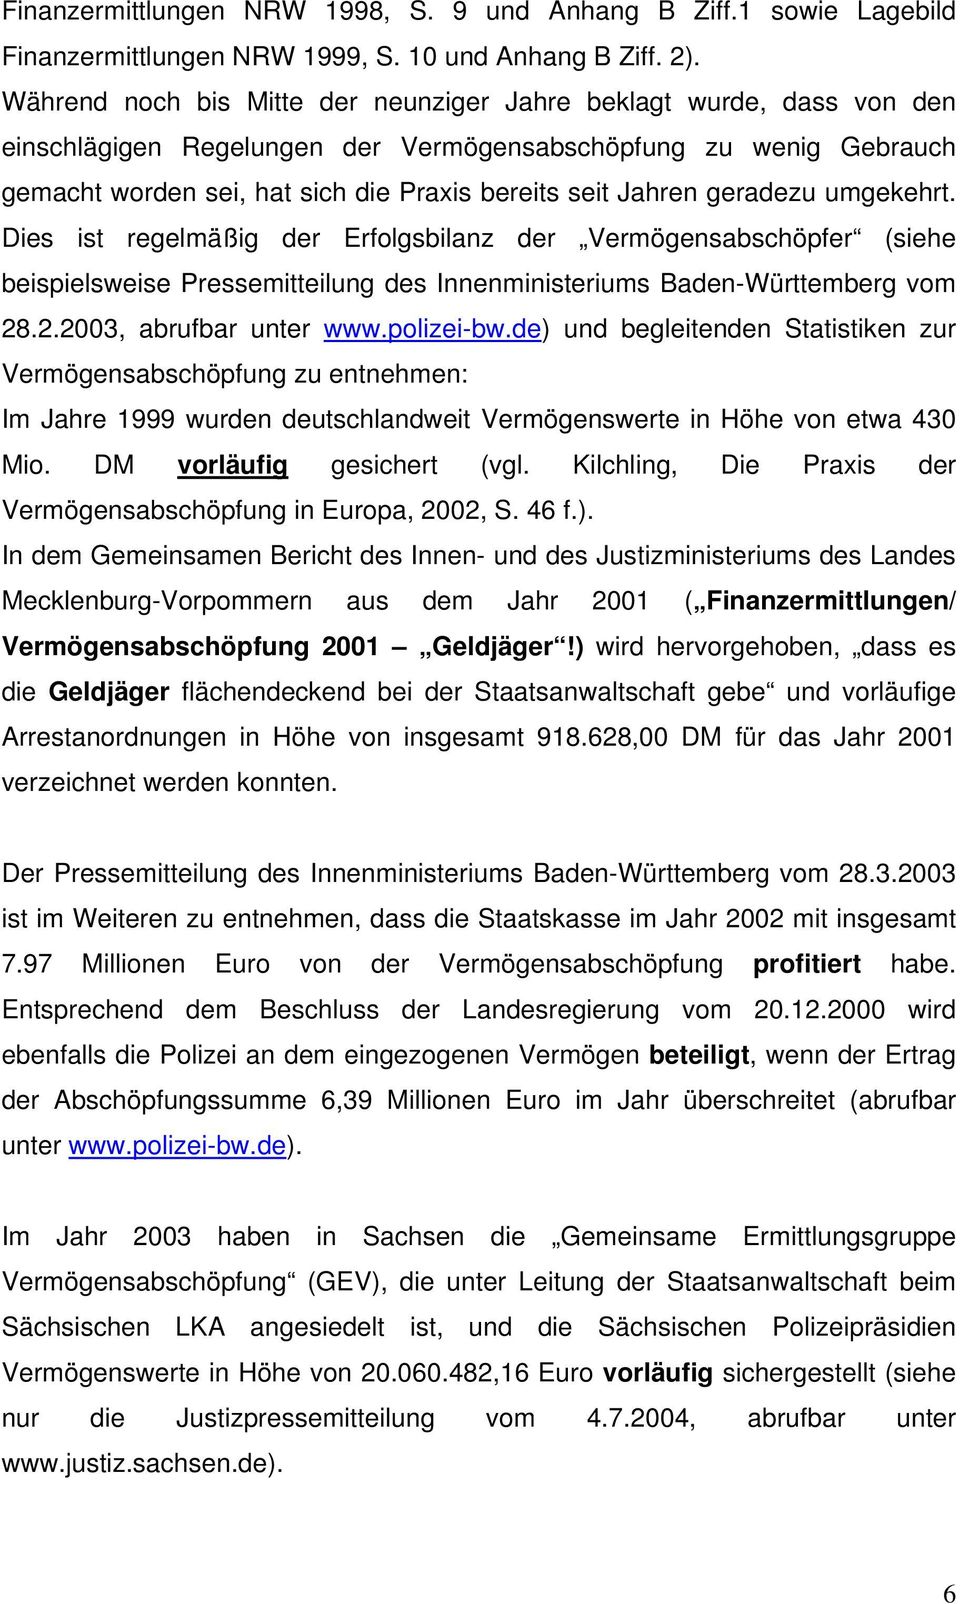 geradezu umgekehrt. Dies ist regelmäßig der Erfolgsbilanz der Vermögensabschöpfer (siehe beispielsweise Pressemitteilung des Innenministeriums Baden-Württemberg vom 28.2.2003, abrufbar unter www.